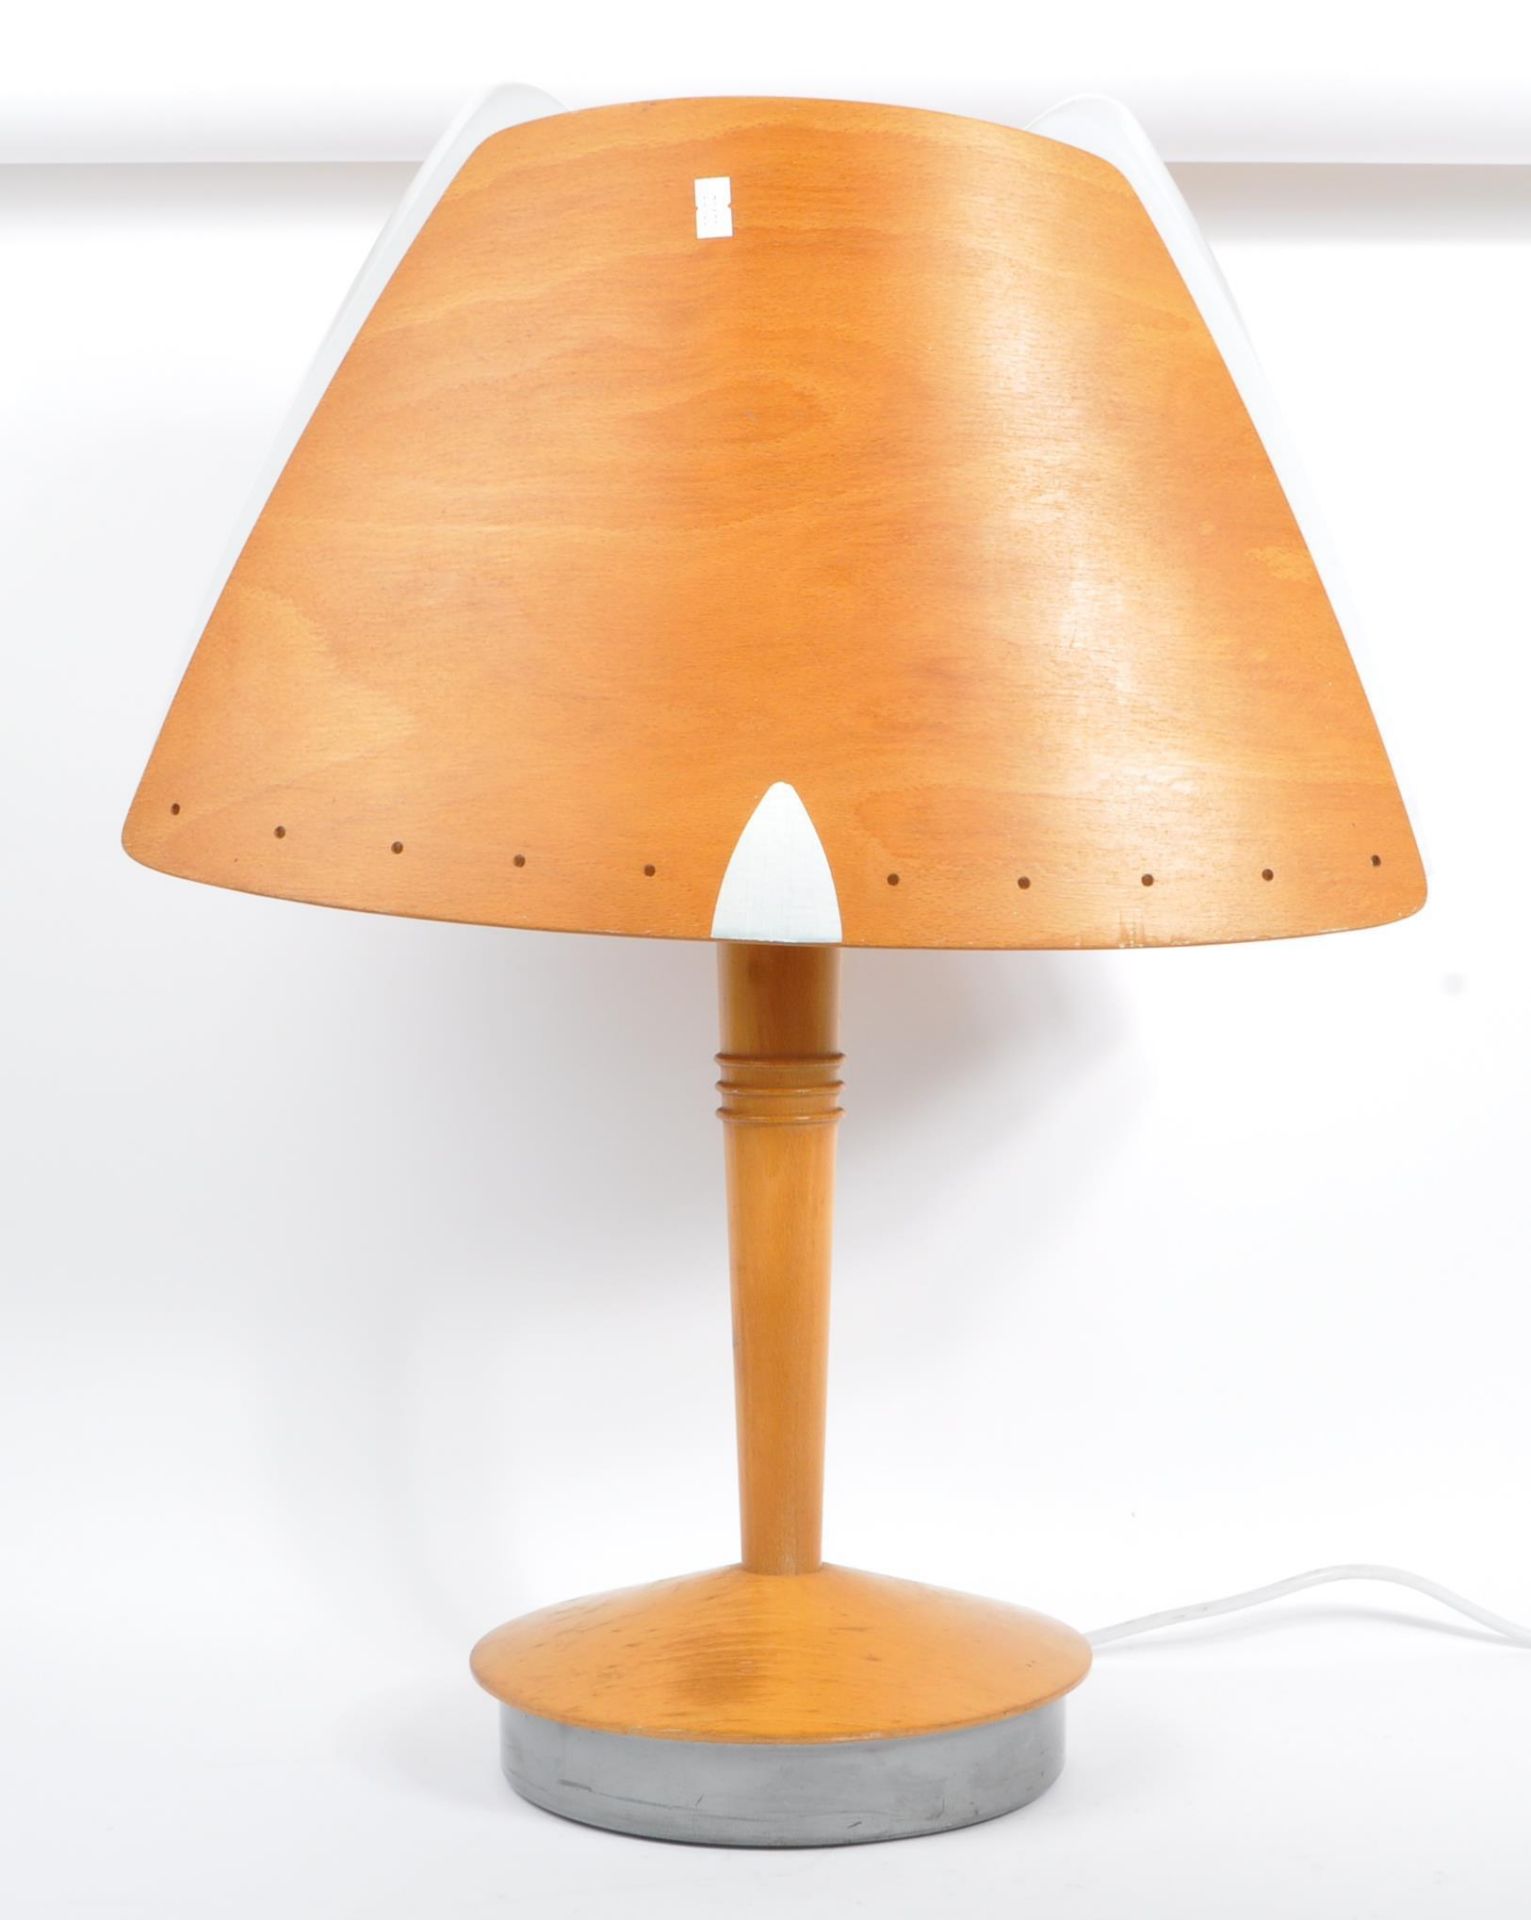 RETRO 20TH CENTURY TABLE LAMP BY SOREN ERIKSEN FOR LUCID